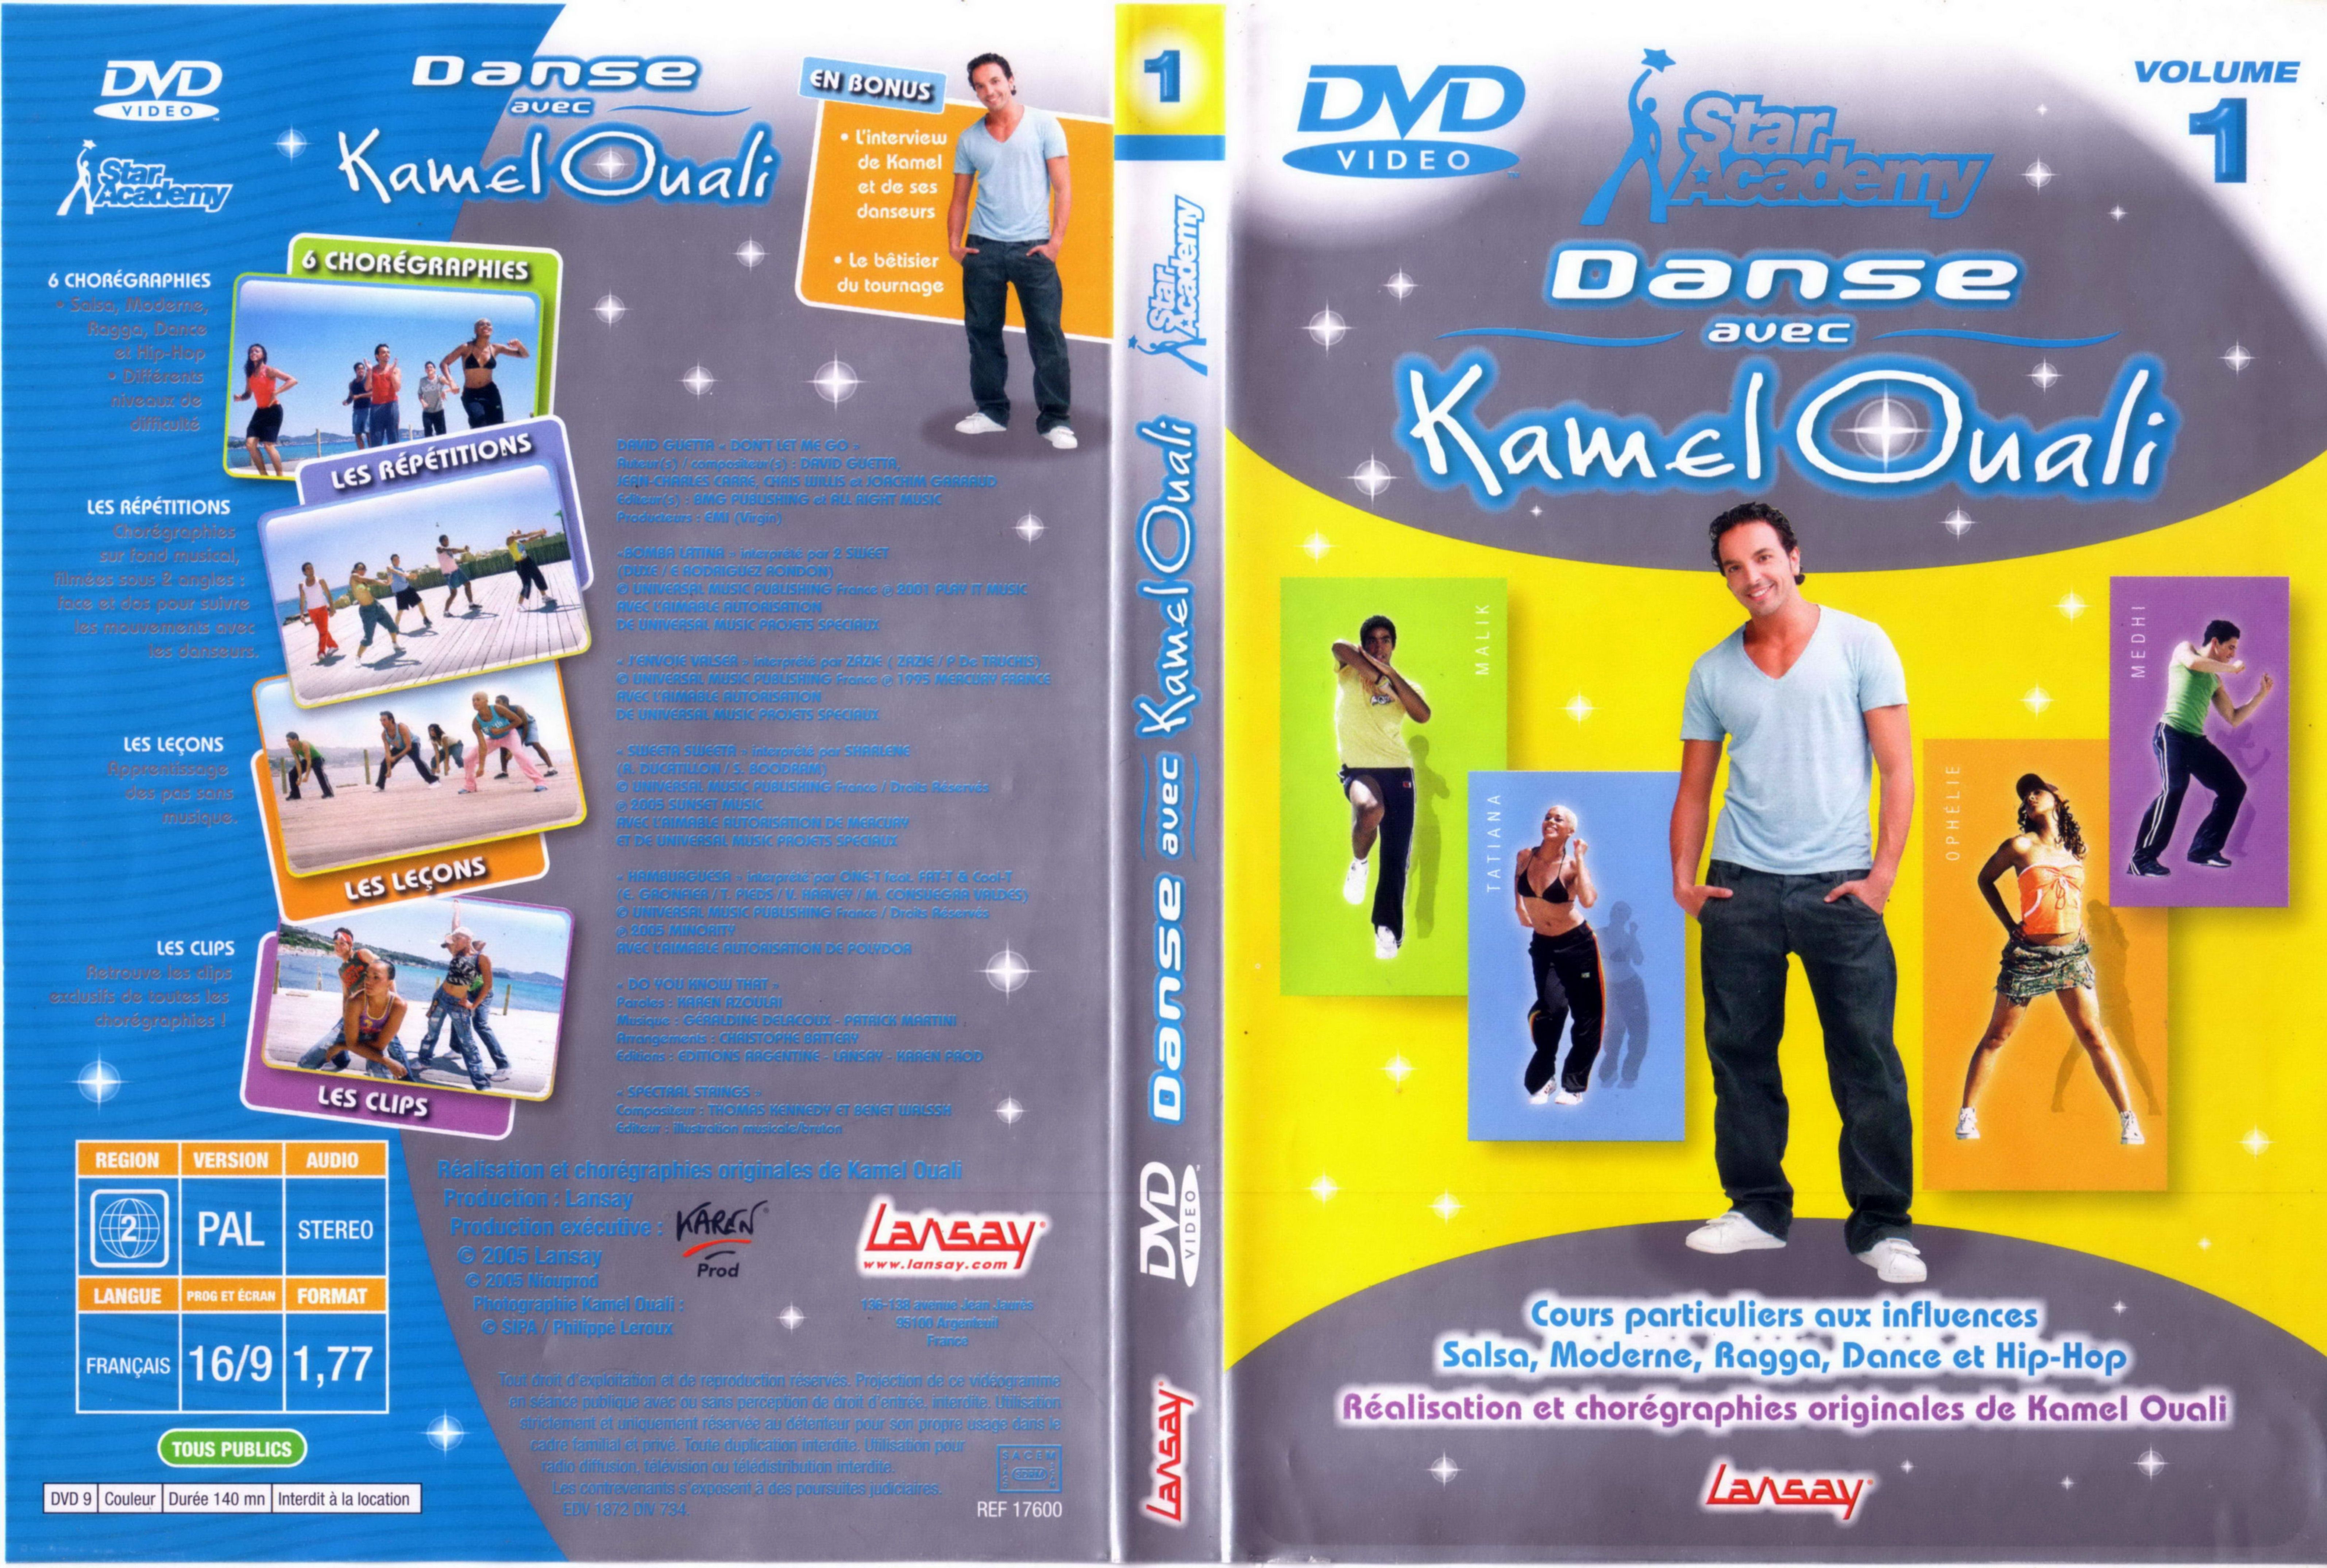 Jaquette DVD Danse avec Kamel Ouali vol 1